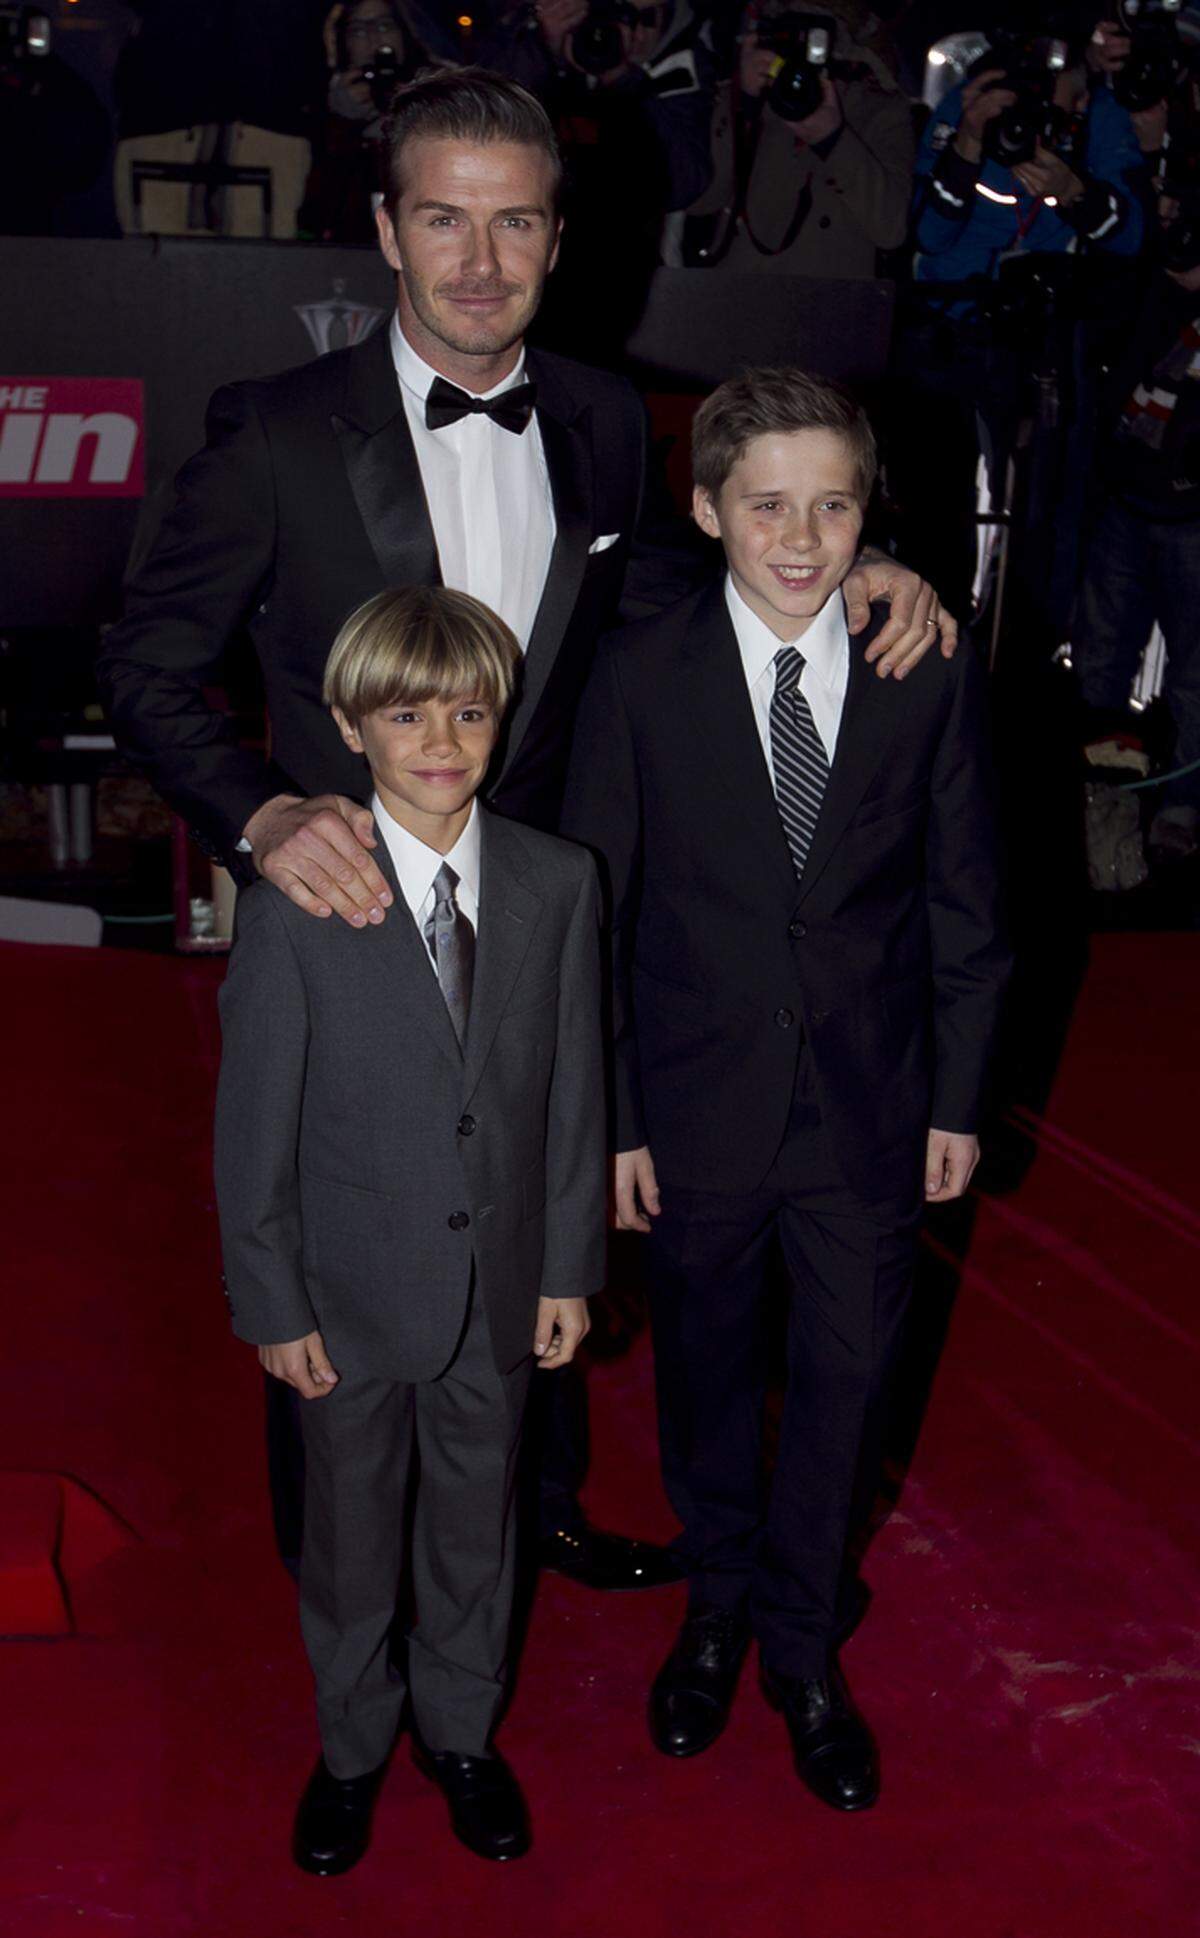 Neben den drei Royals erschienen auch Promis wie David Beckham mit seinen Söhnen Brooklyn and Romeo sowie...